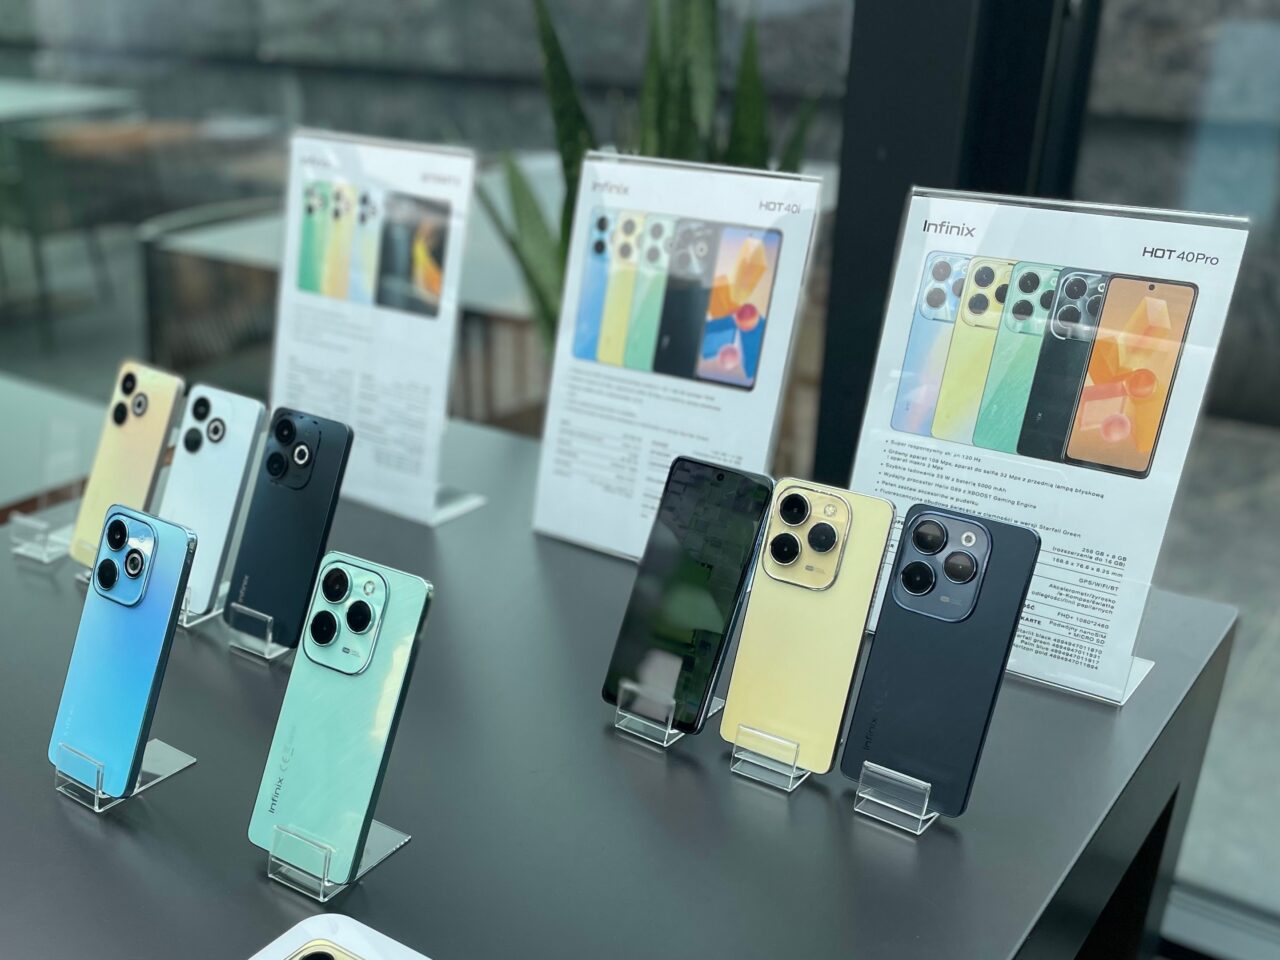 Wystawa smartfonów Infinix w różnych kolorach, ustawiona na przeszklonej ladzie, z informacyjnymi ulotkami w tle.